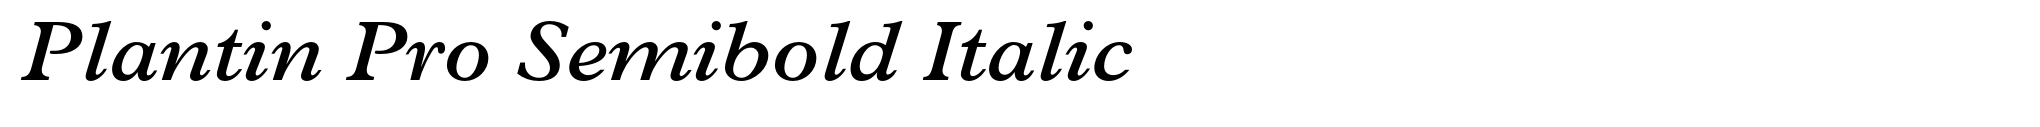 Plantin Pro Semibold Italic image